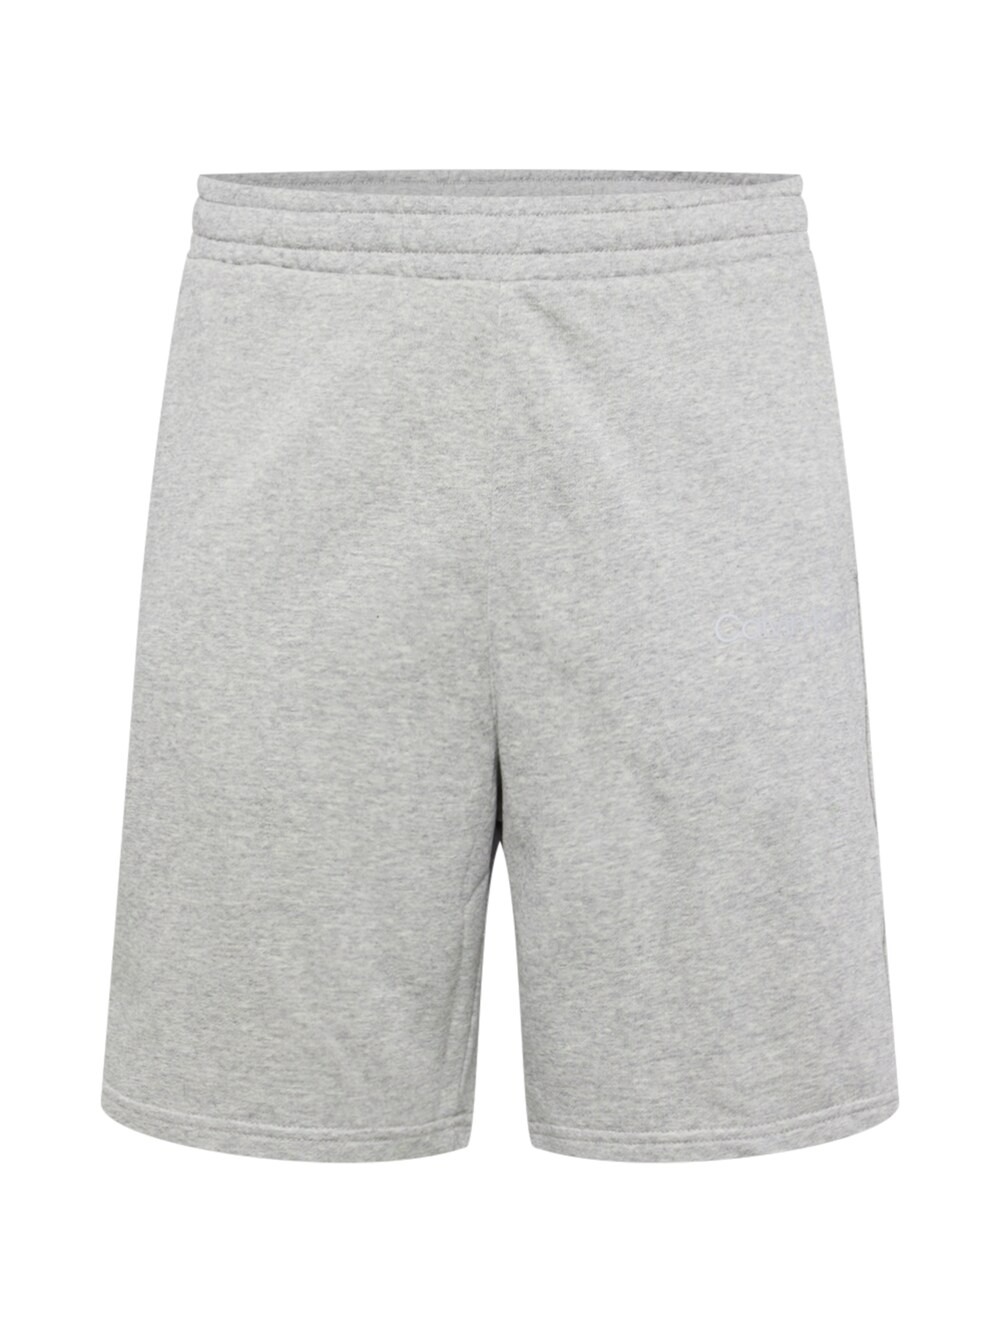 Обычные тренировочные брюки Calvin Klein Sport, серый/пестрый серый